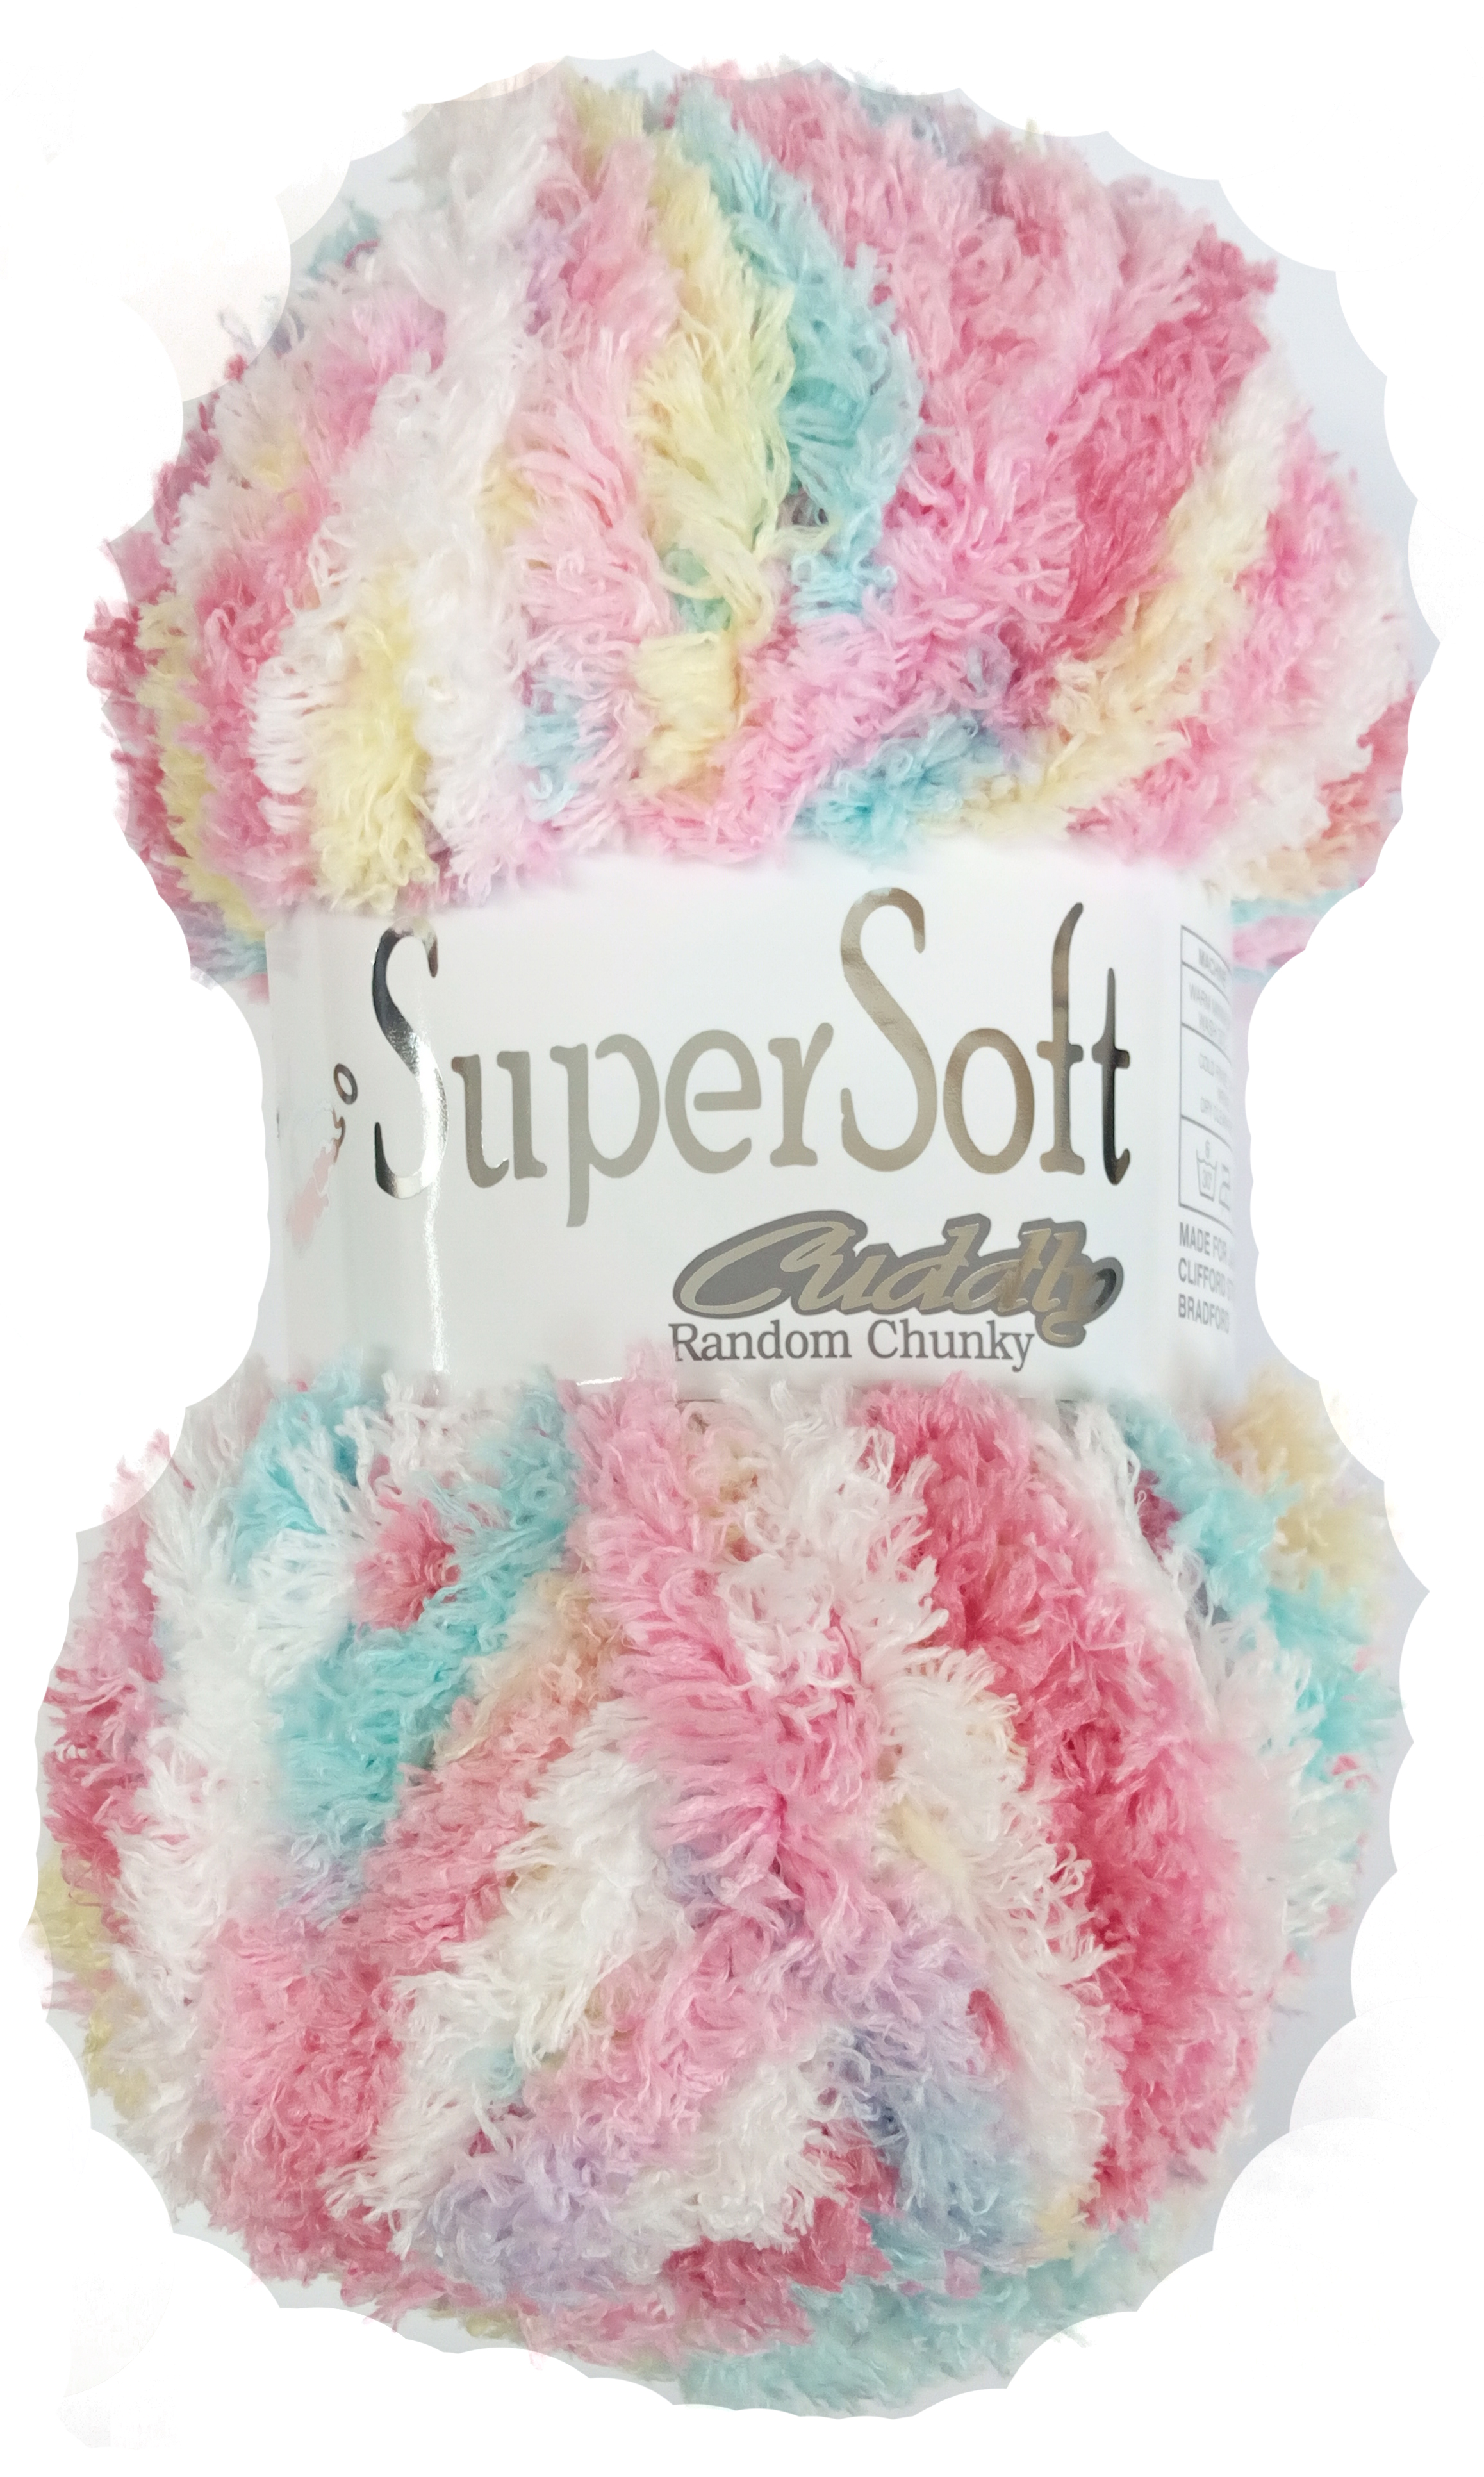 Super Soft Cuddly Yarn Flossie